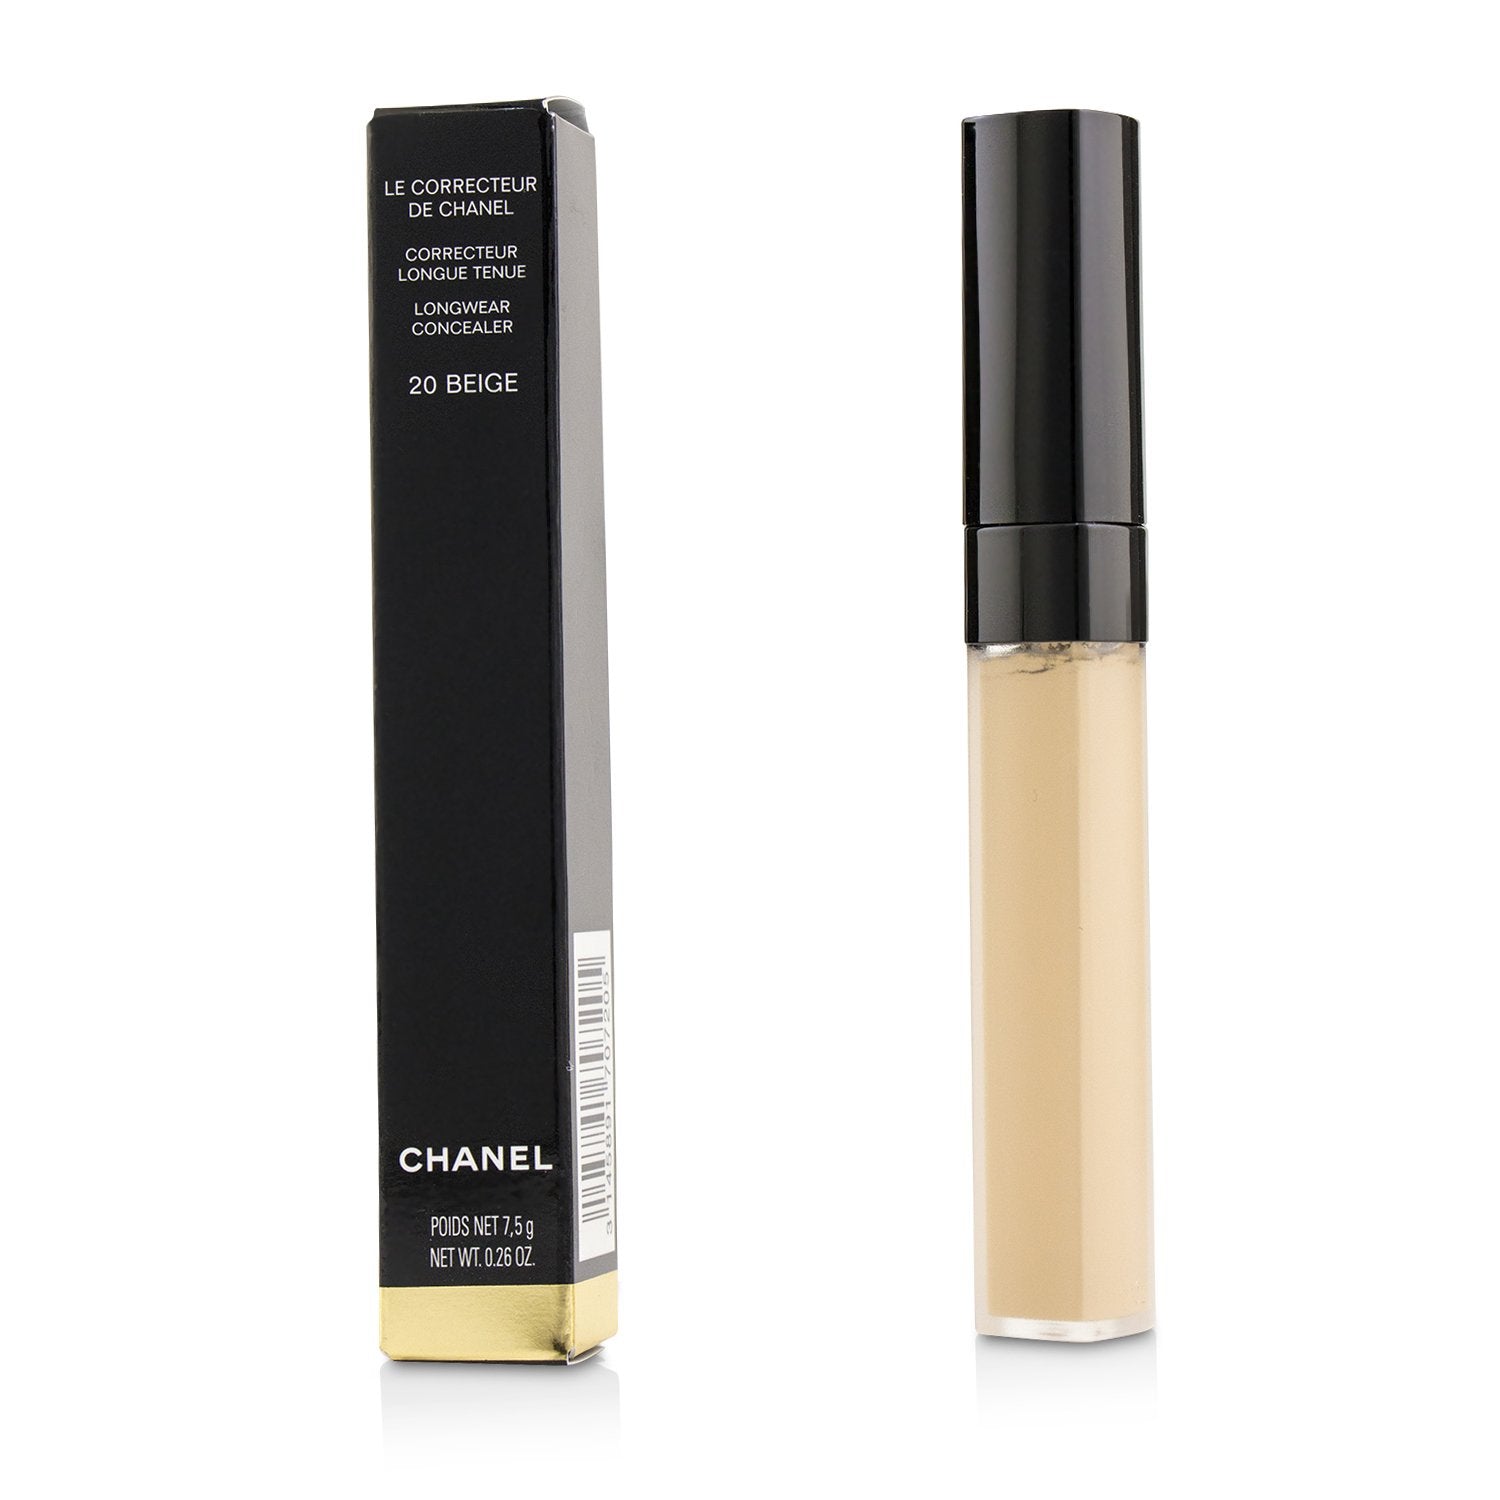 Chanel Le Correcteur De Chanel Longwear Concealer 7.5g/0.26oz buy